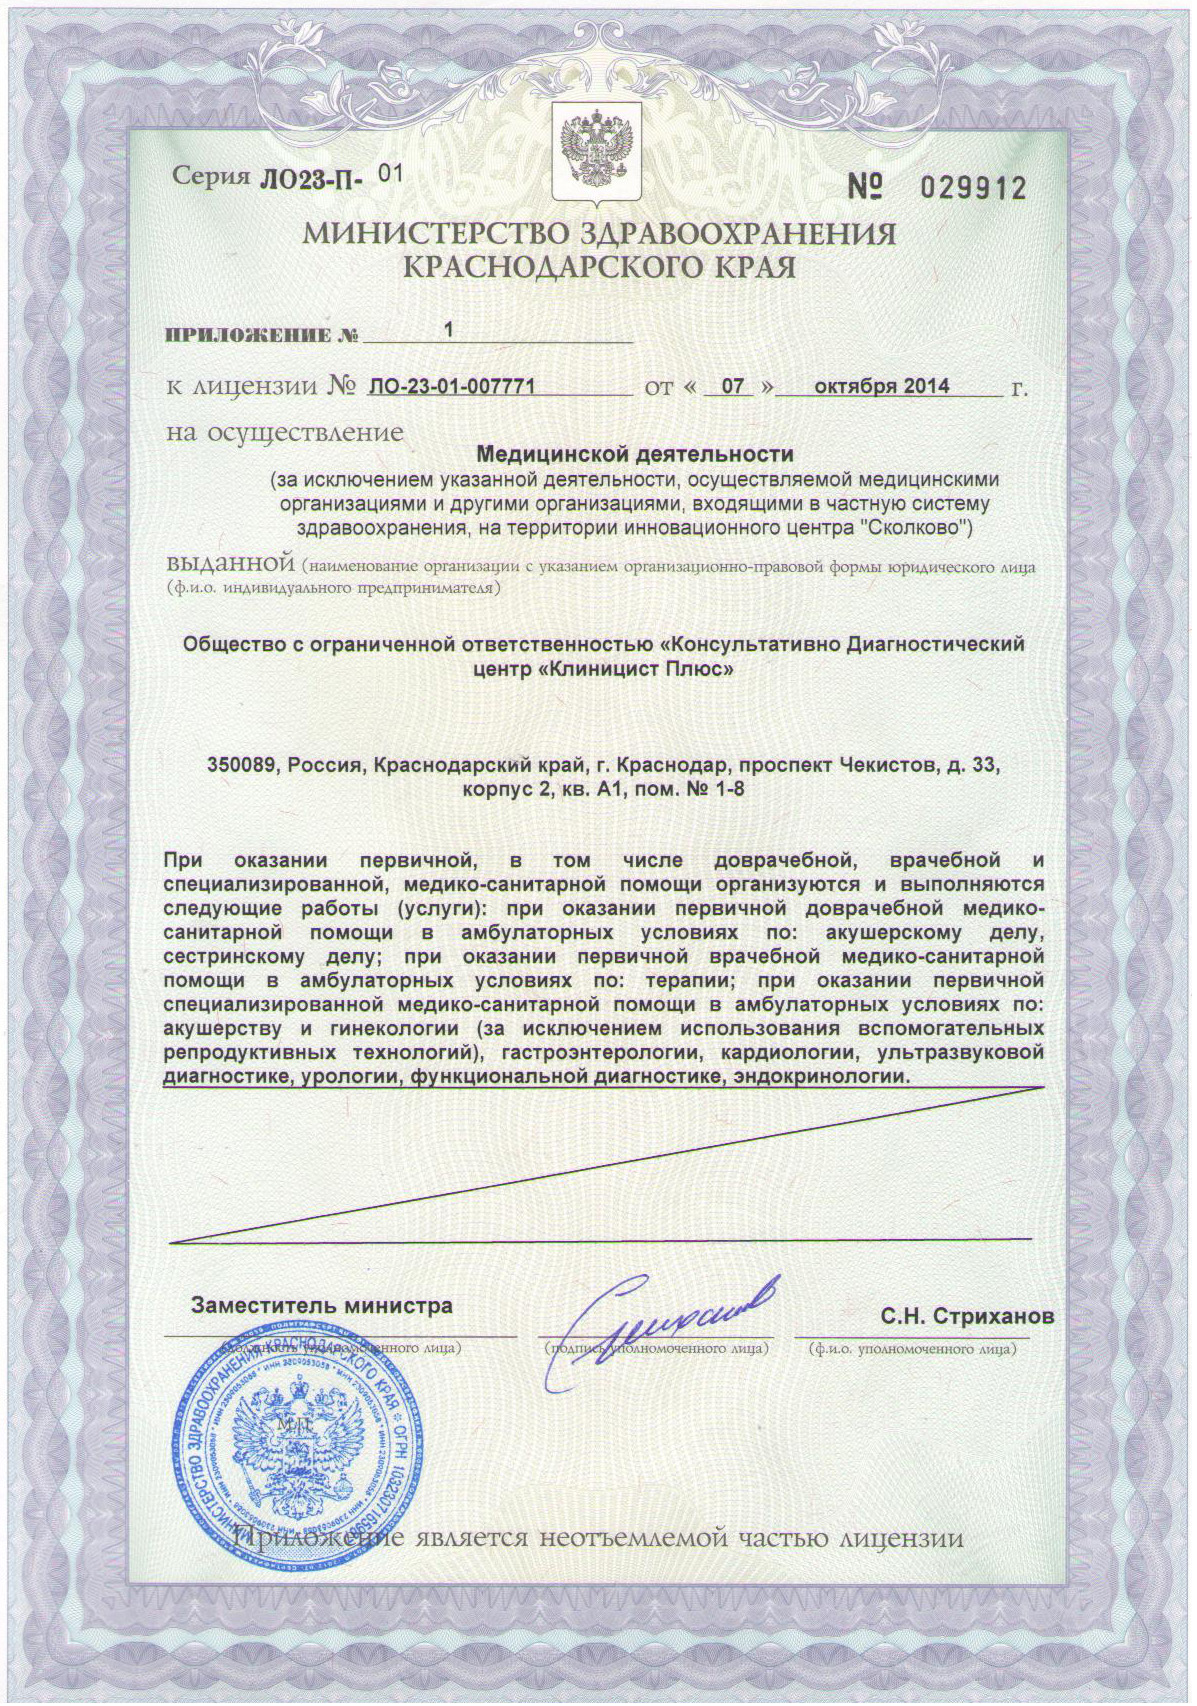 Приложение к лицензии на осуществление медицинской деятельности сети медицинских центров Клиницист